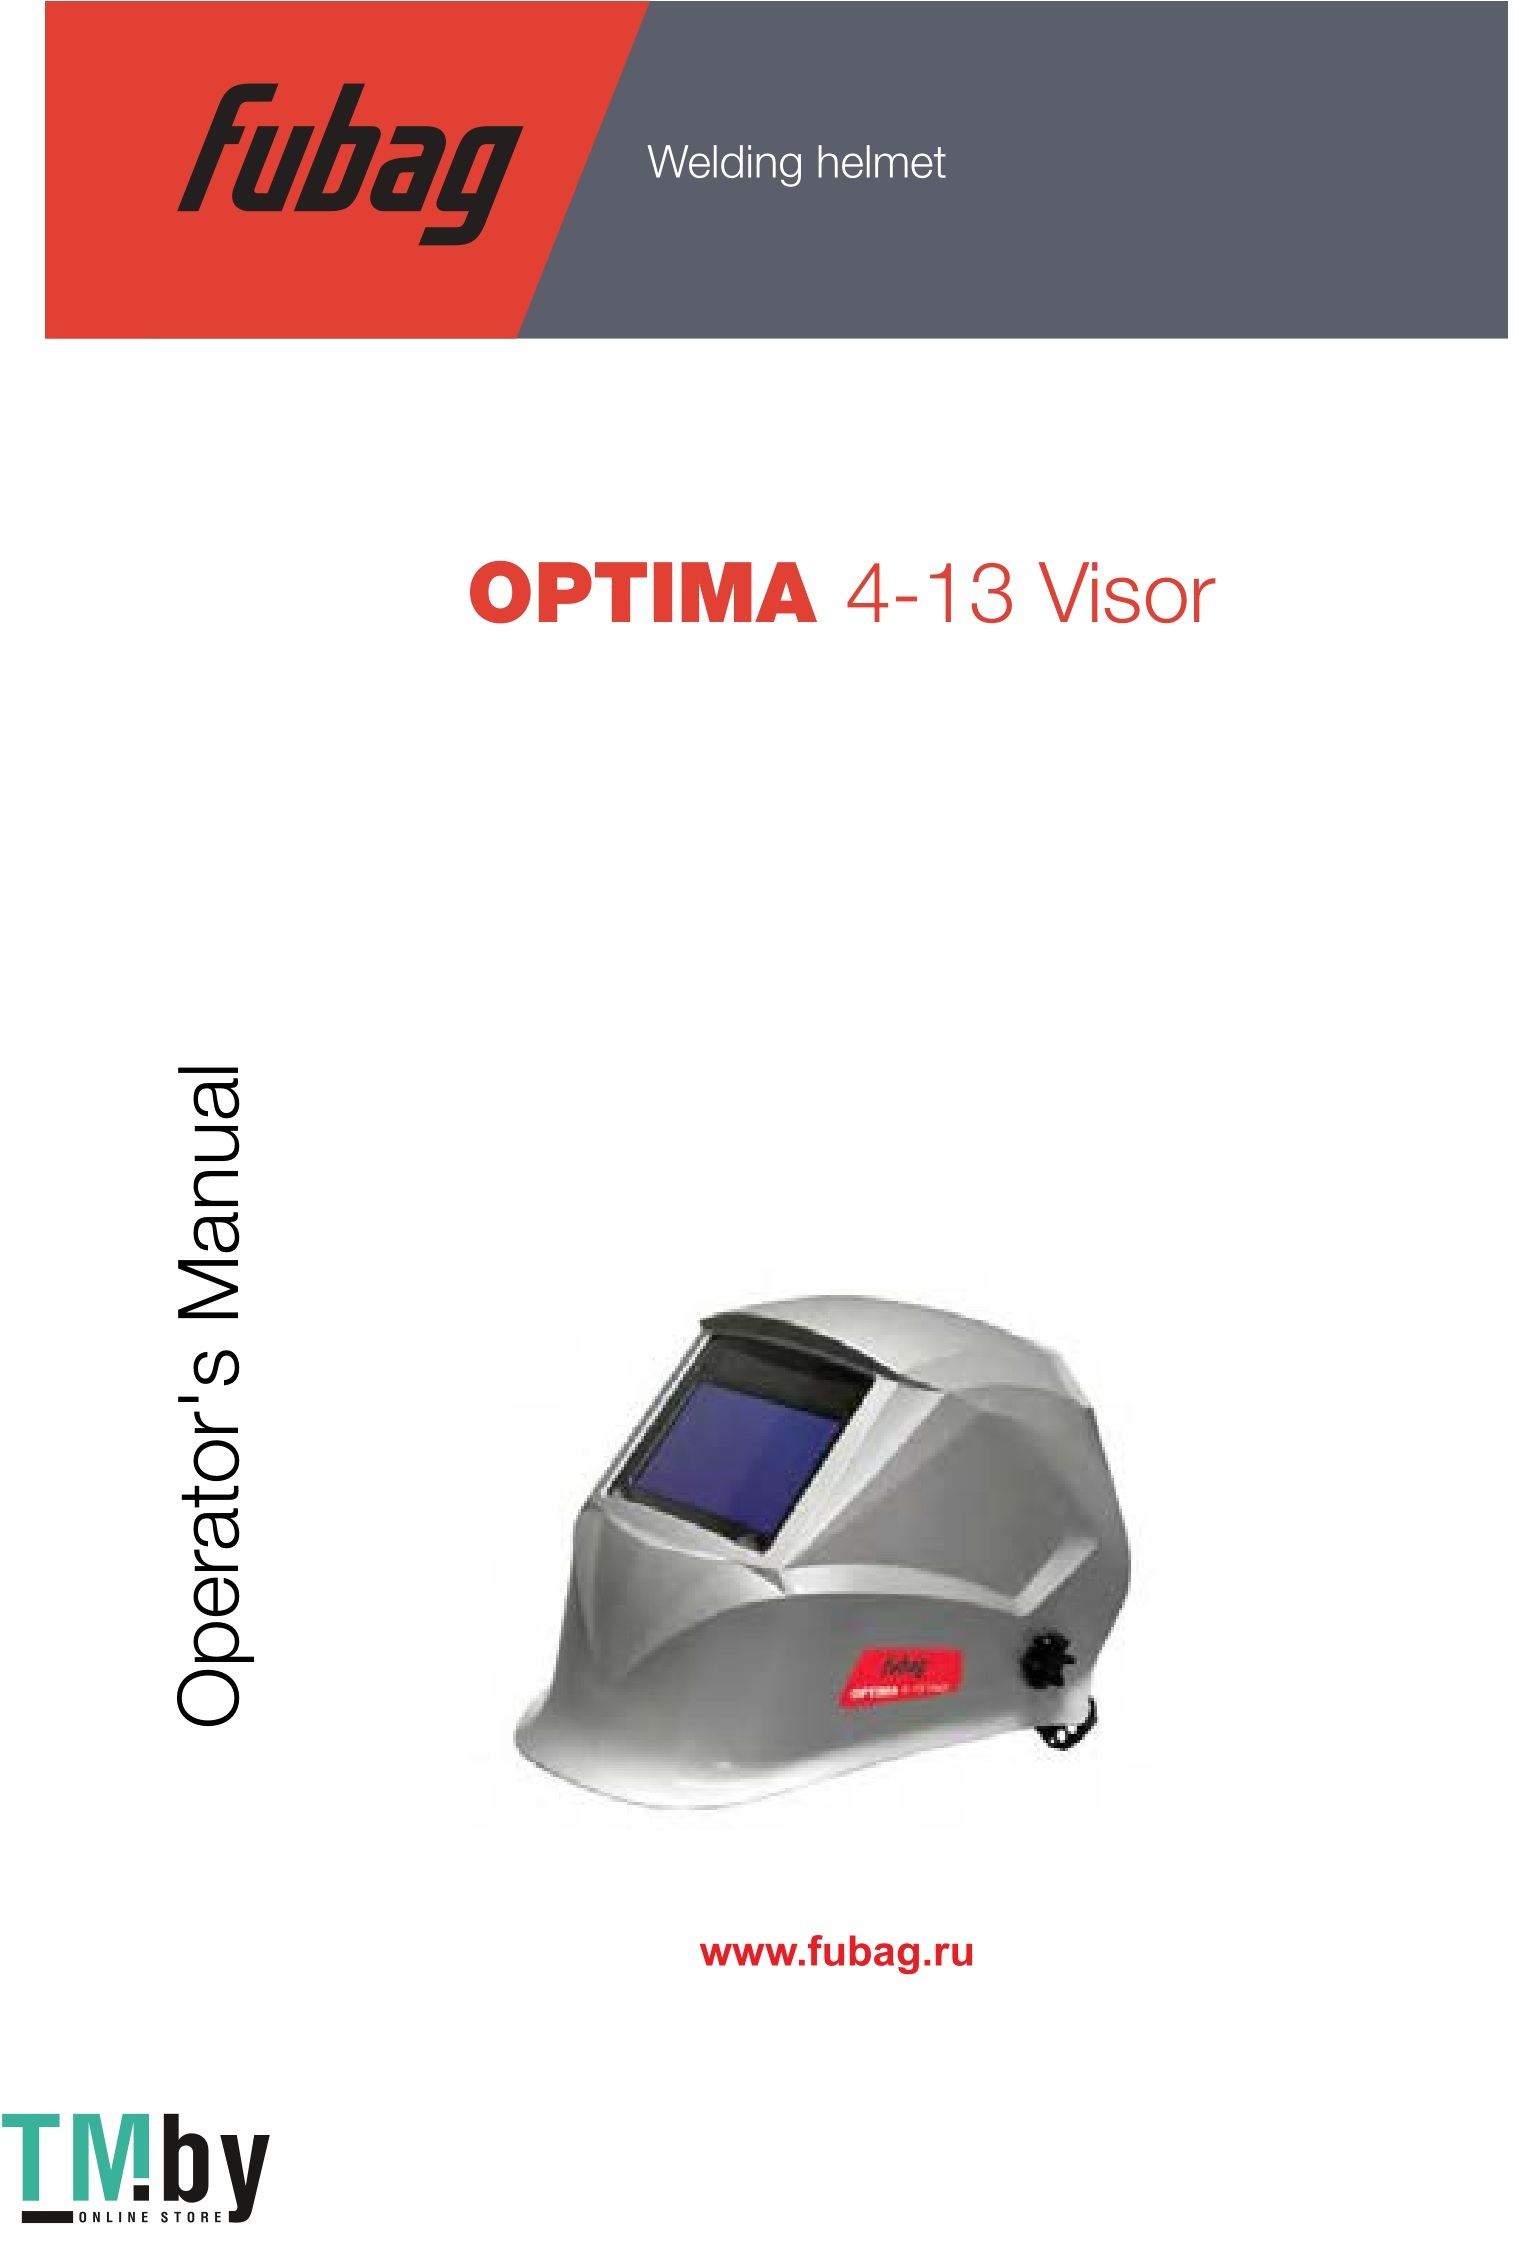 FUBAG OPTIMA 4-13 Visor Welding helmet Owner's Manual